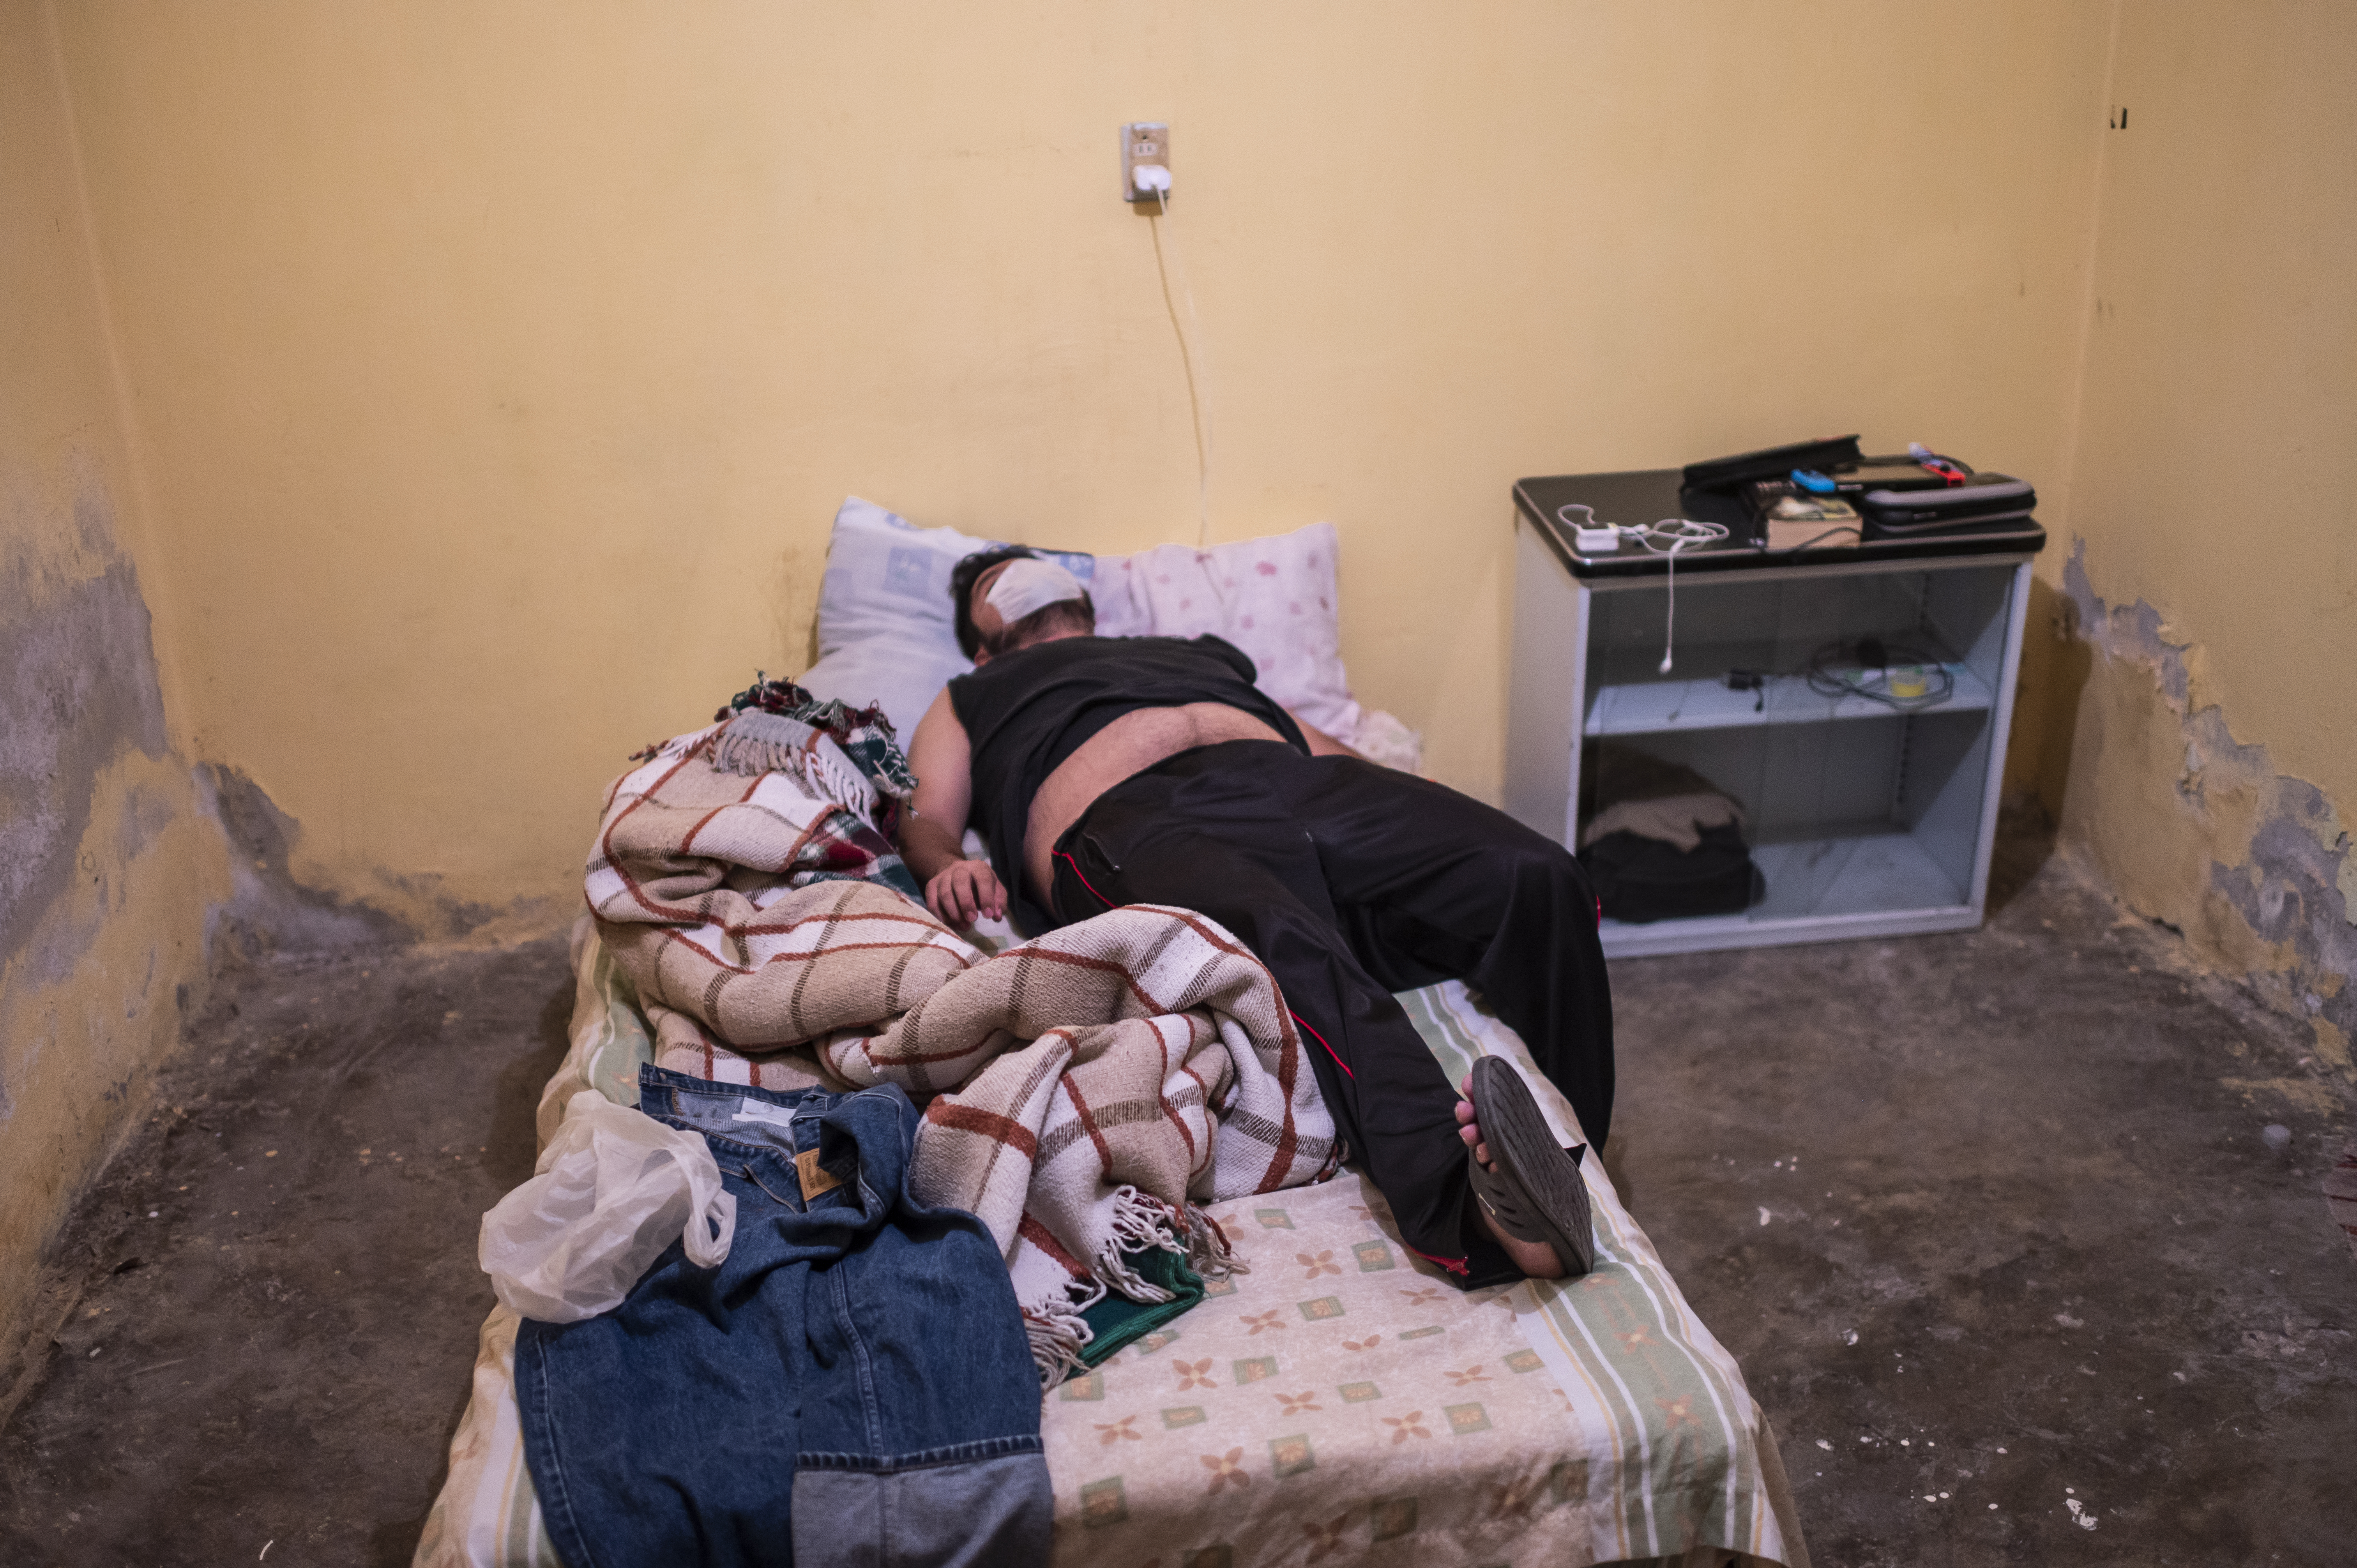 Un hombre con síntomas de COVID-19 yace en la cama después de que un paramédico lo revisó, en Ciudad Nezahualcóyotl, Estado de México, México, el 22 de junio de 2020 durante la nueva pandemia de coronavirus. (Foto por Pedro PARDO / AFP)